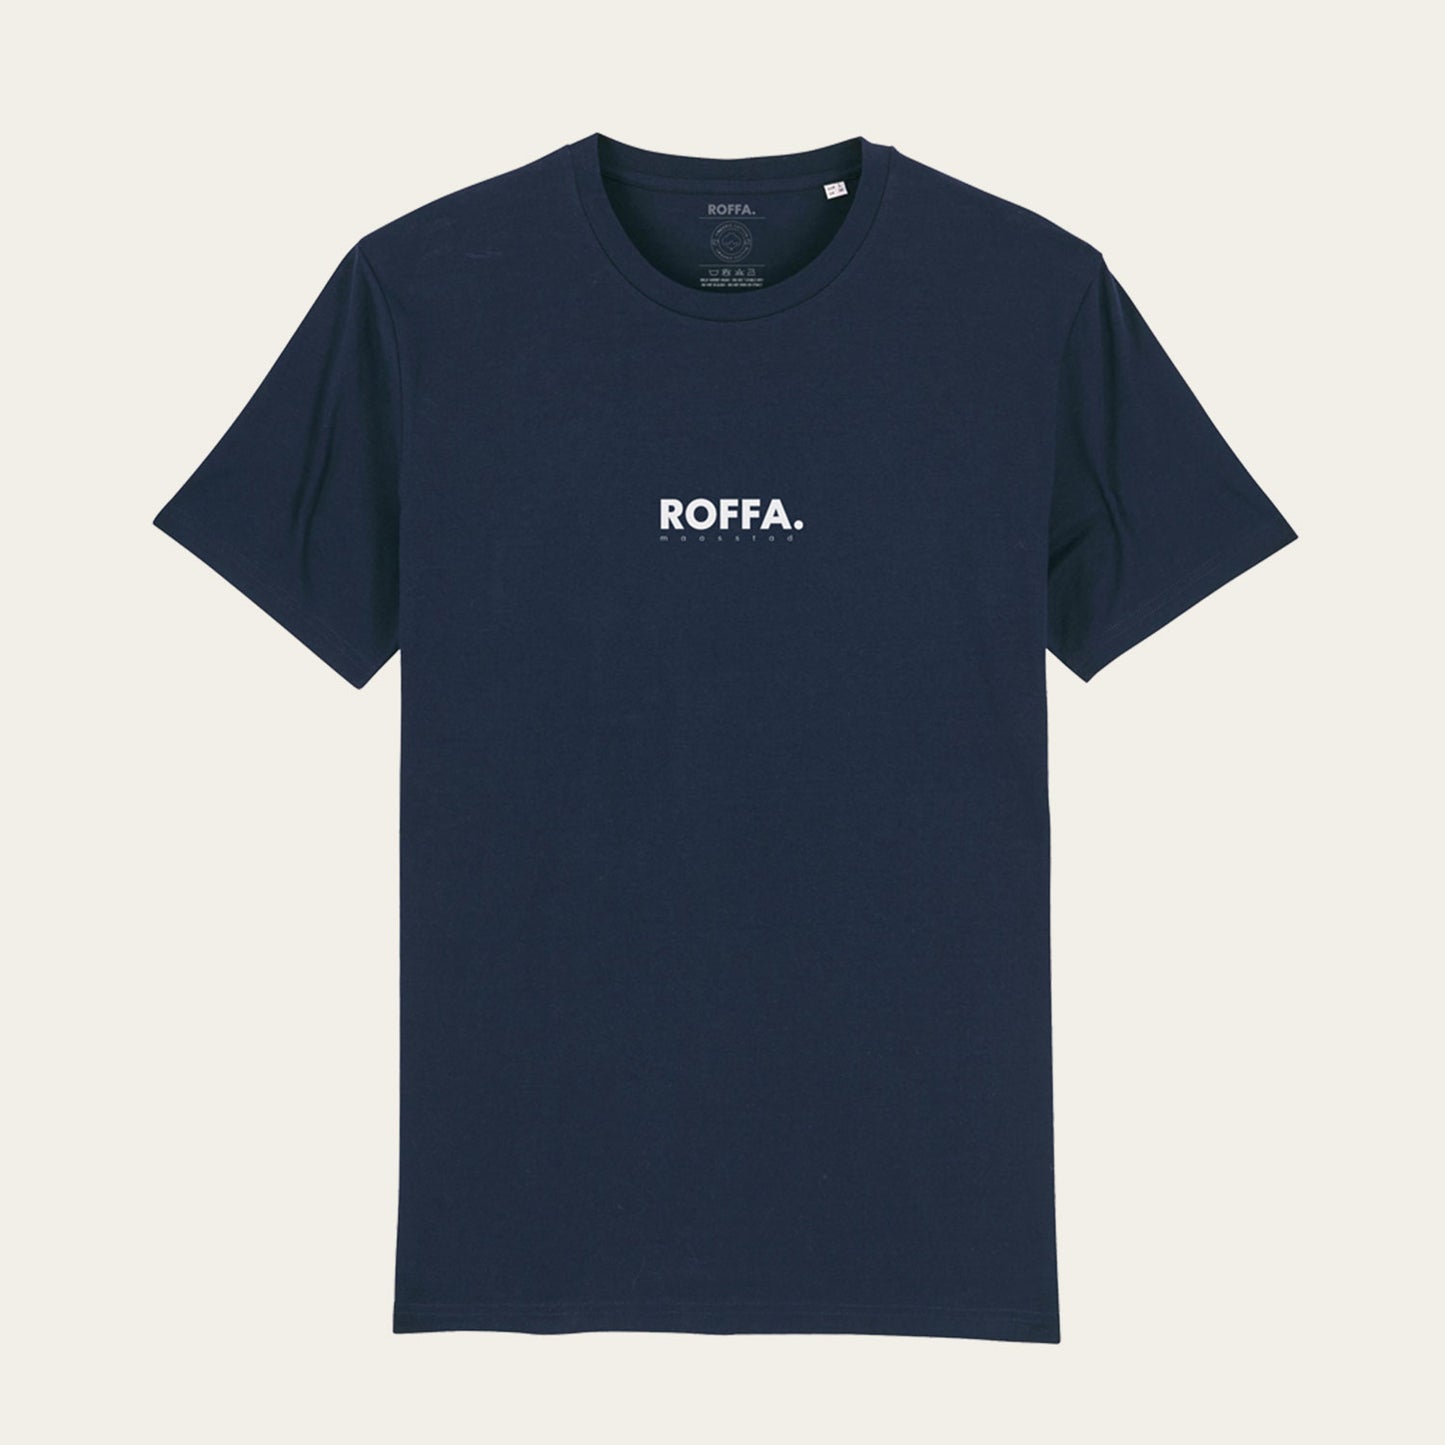 Blauw t-shirt met groot ROFFA. rotterdam logo